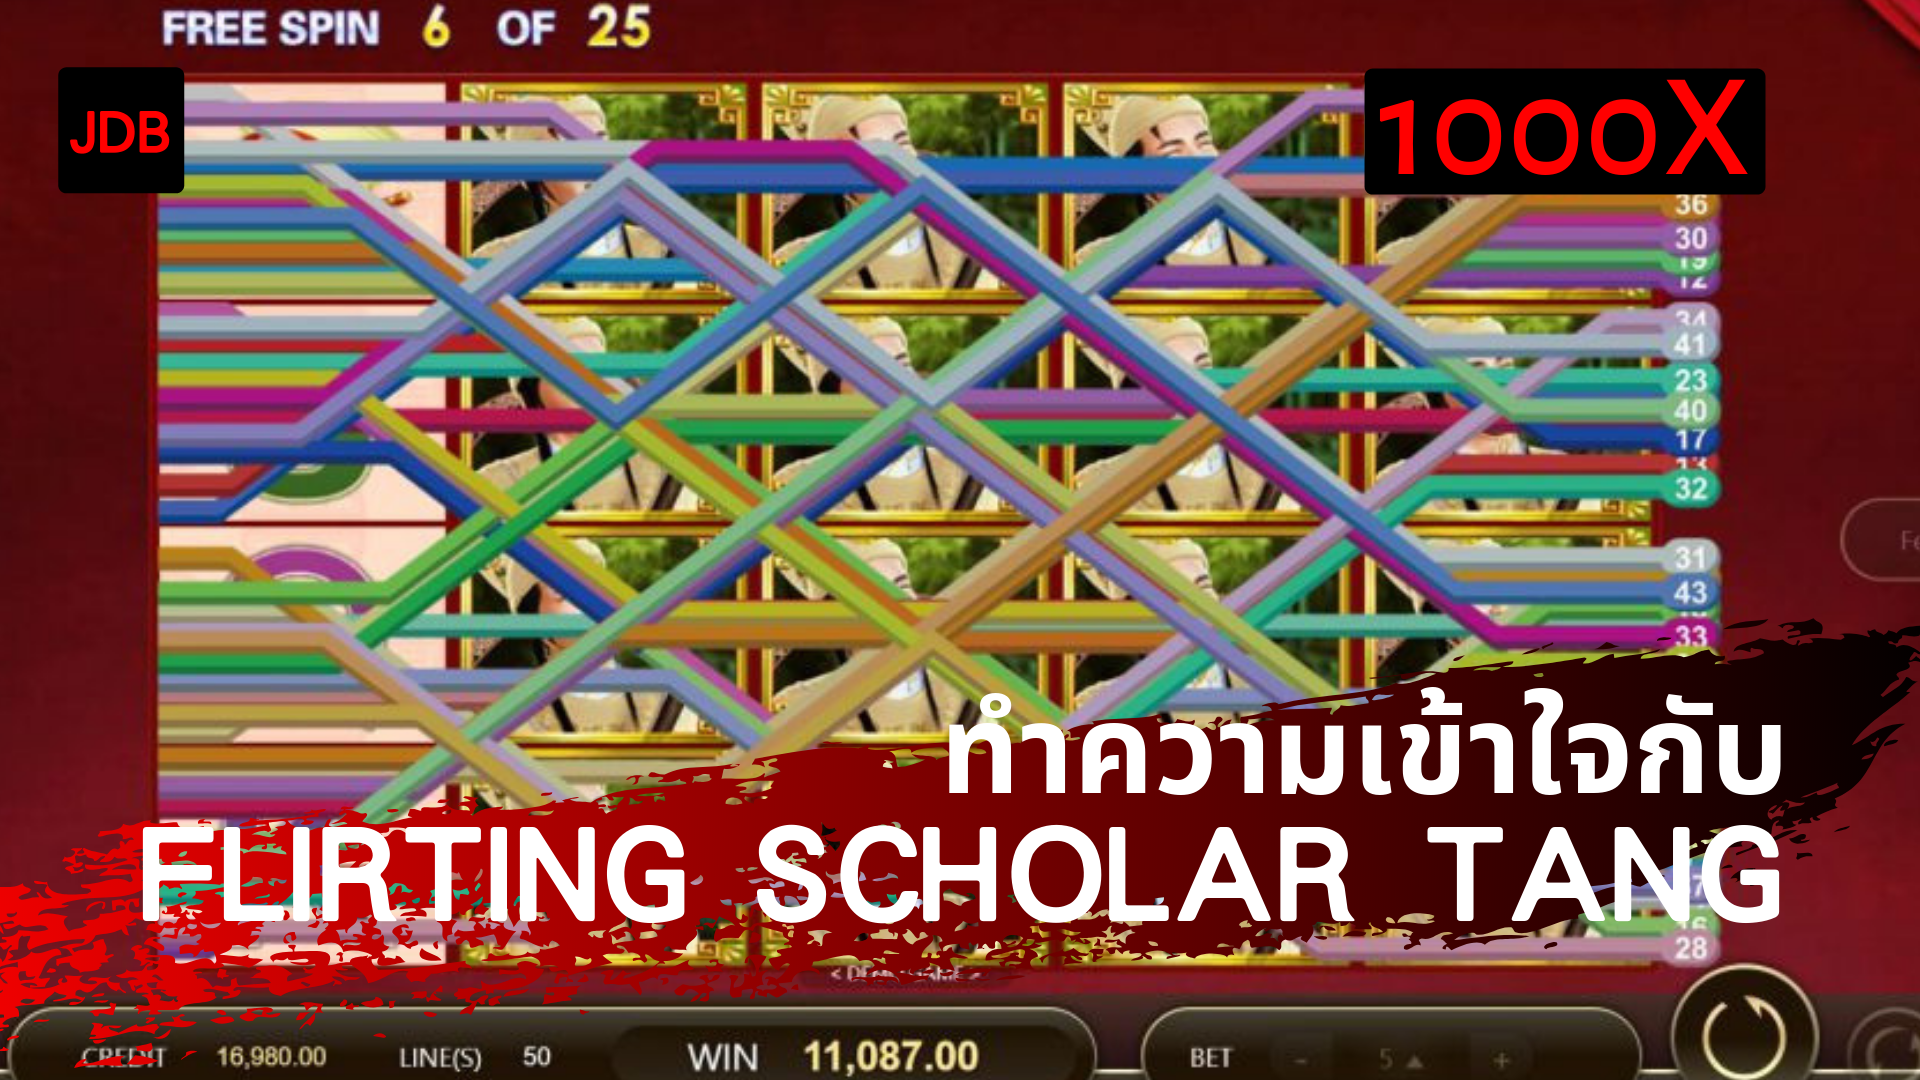 【JDB Flirting Scholar Tang】คอลัมน์เกมเดย์ Pay69 slotgame เกมสล็อต 23